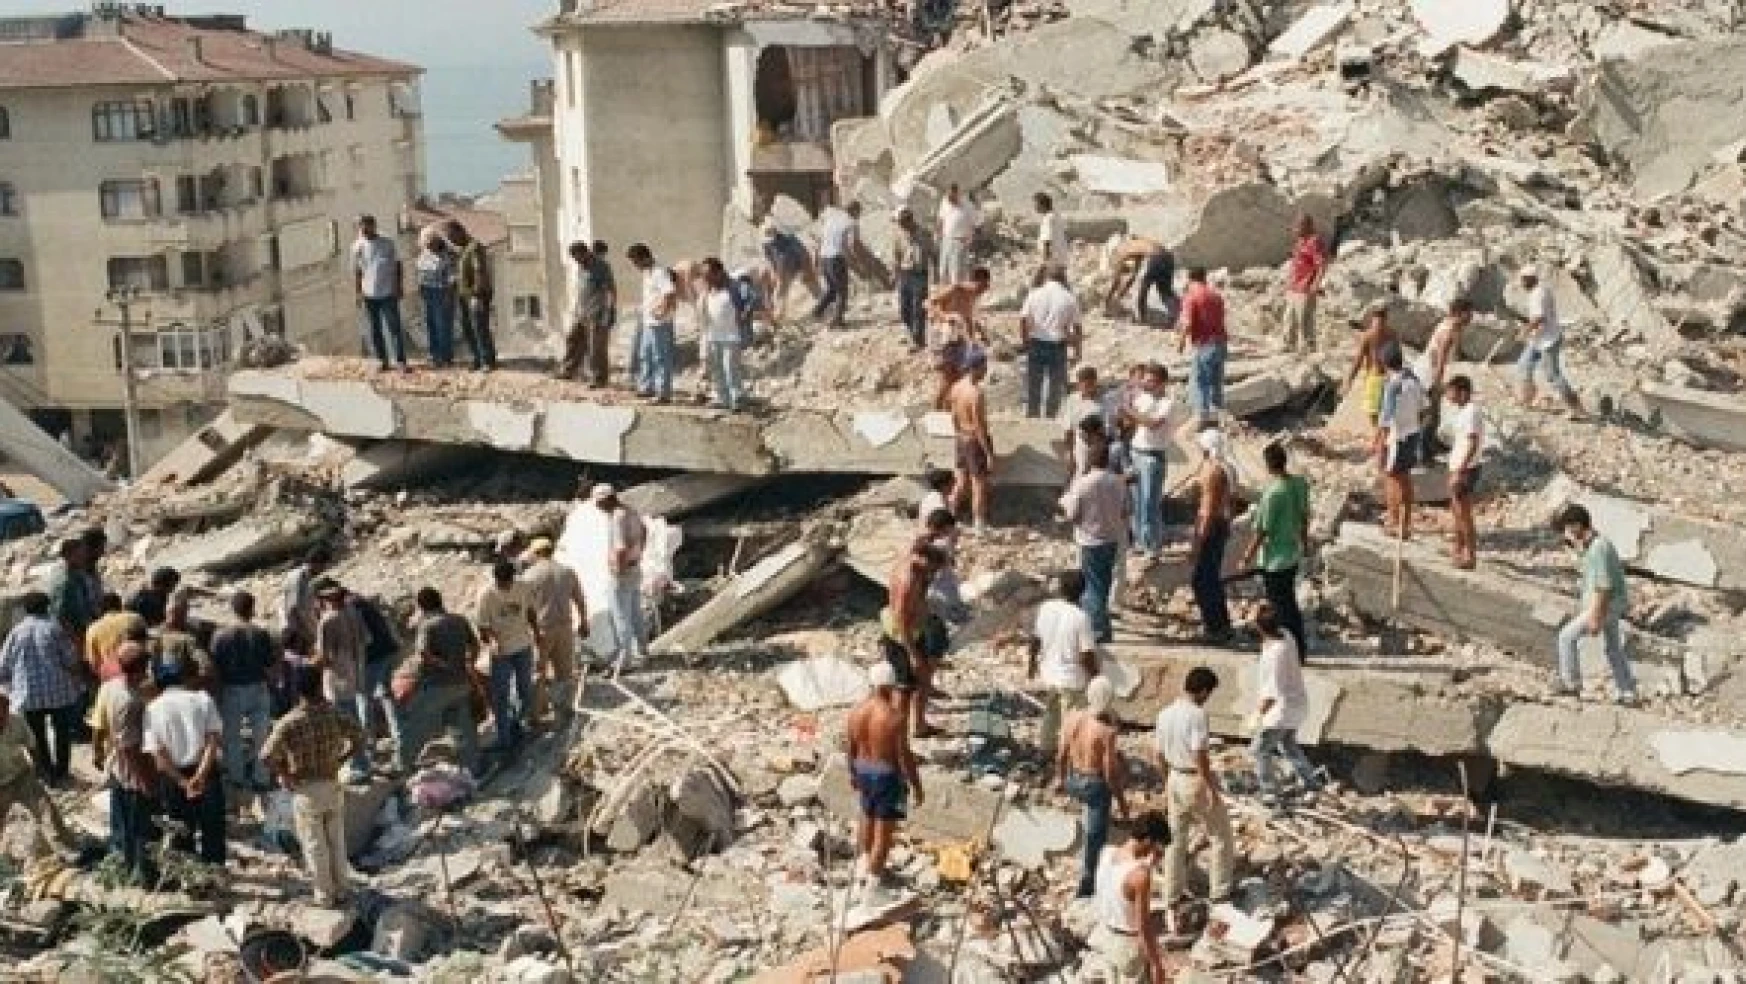 17 Ağustos depreminin üzerinden 23 yıl geçti... 17 Ağustos depremi kaç saniye sürdü, depremde kaç kişi öldü?